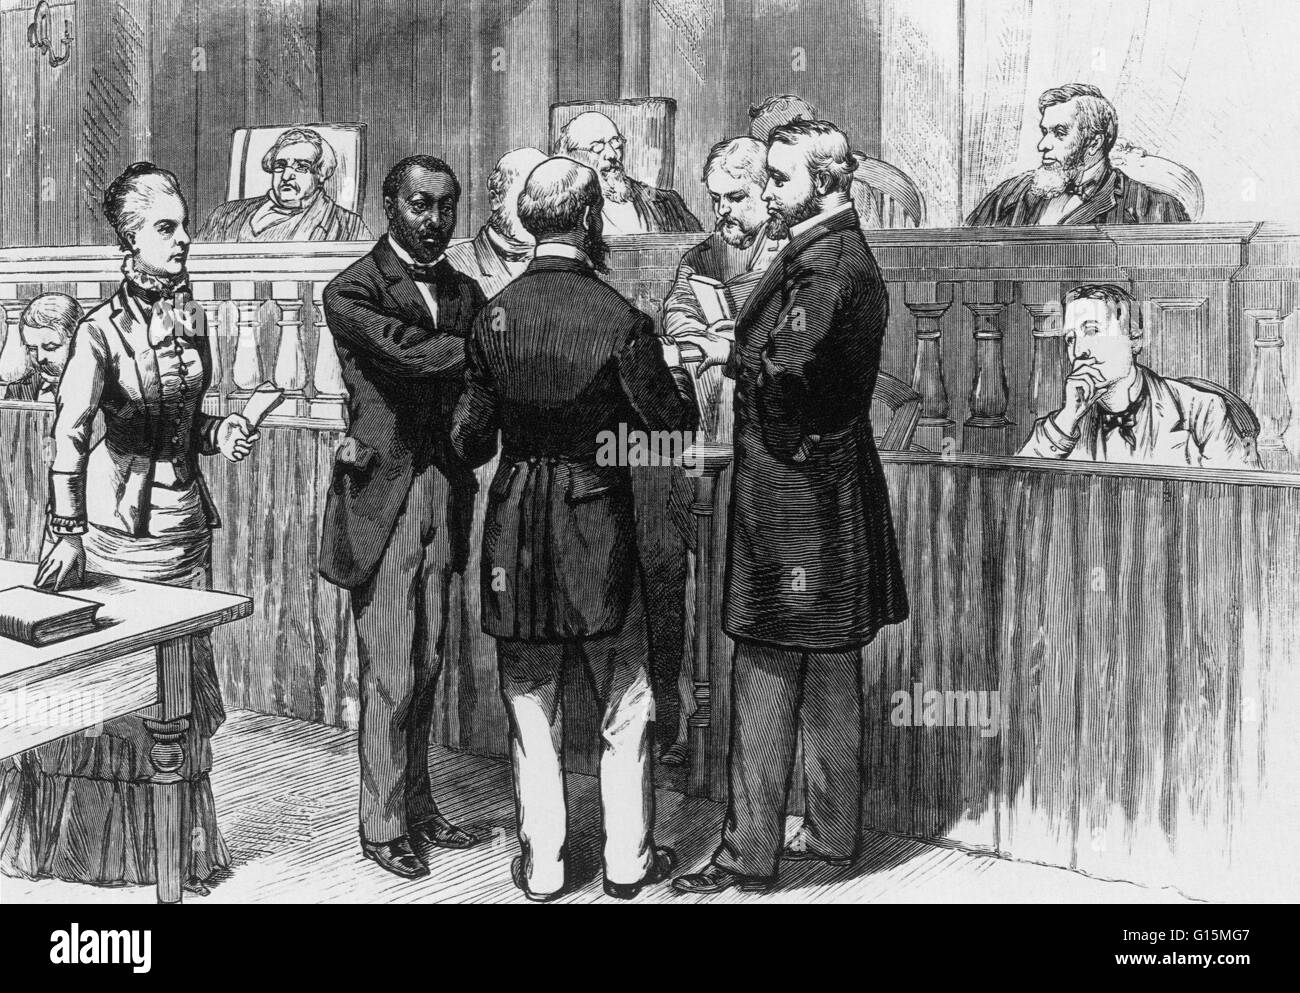 Abbildung beschriftet: "Am 2. Februar 1880, Hiram schwelgt wurde der erste Afroamerikaner, der vor dem obersten Gerichtshof zugelassen." Hiram Rhodes Revels (27. September 1827 - 16. Januar 1901) war der erste nicht-weiße, im Senat Vereinigten Staaten dienen. Er w Stockfoto